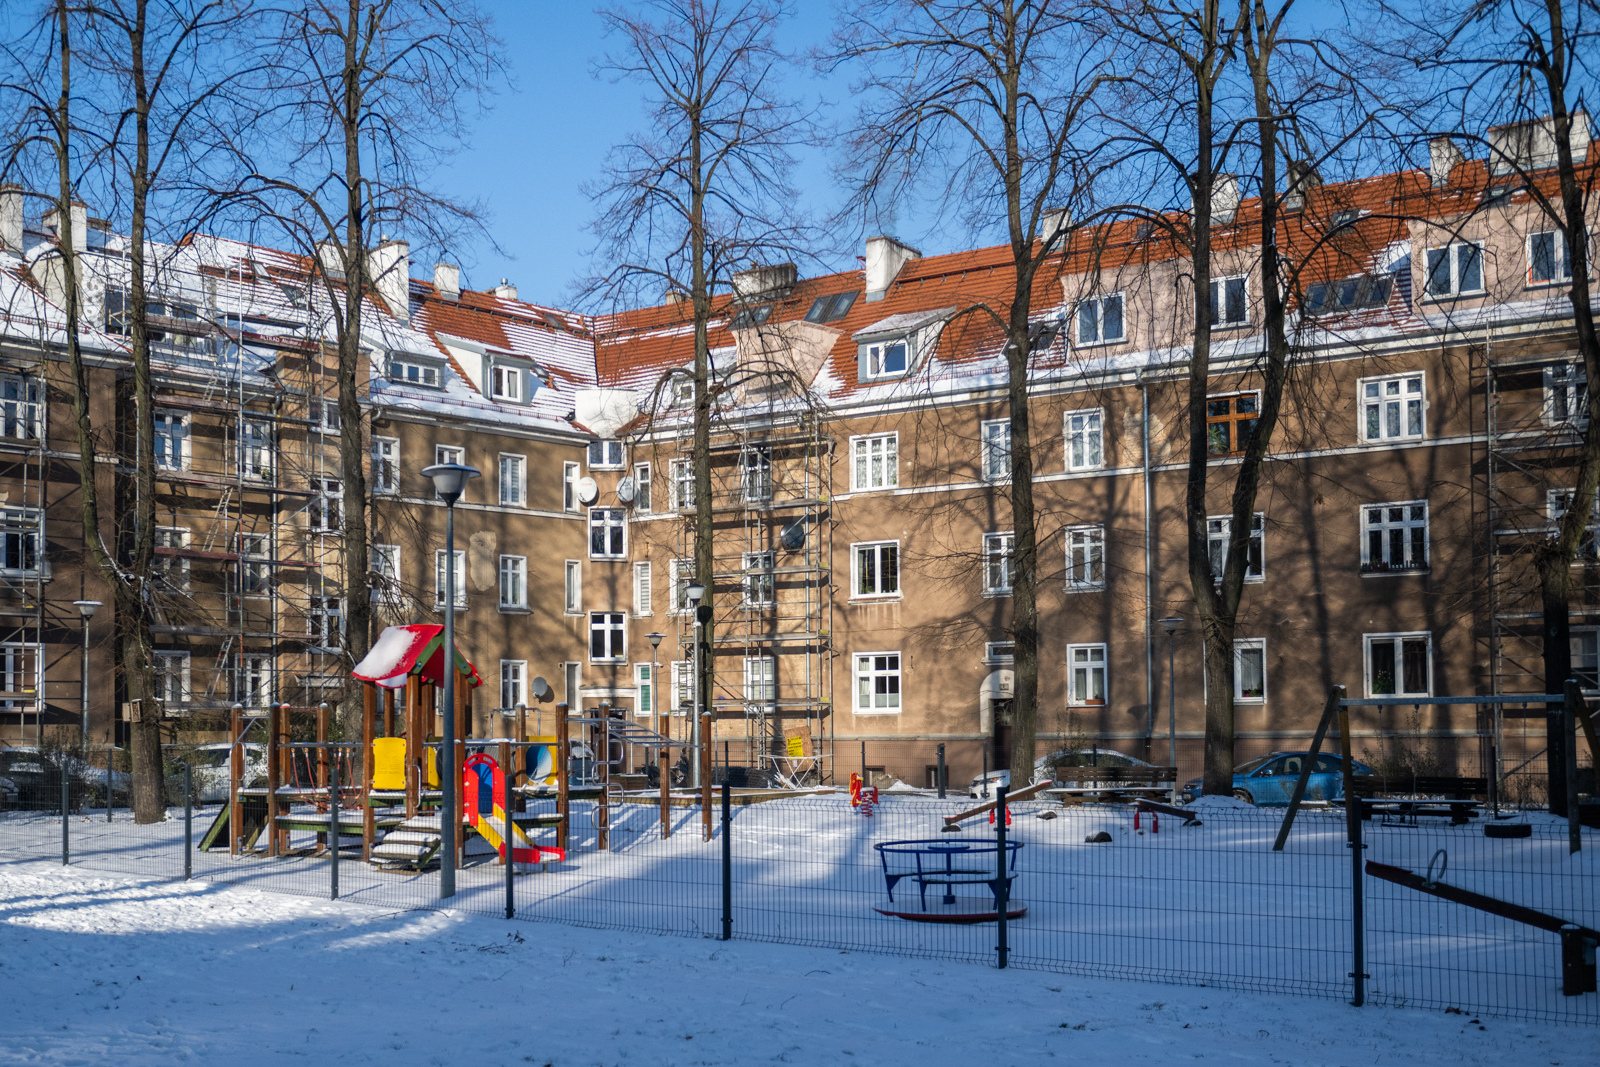 Kolonia mieszkaniowa w Poznaniu to blok, który powstał w kwartale ulic Wspólna – Rolna – Tokarska w Poznaniu.